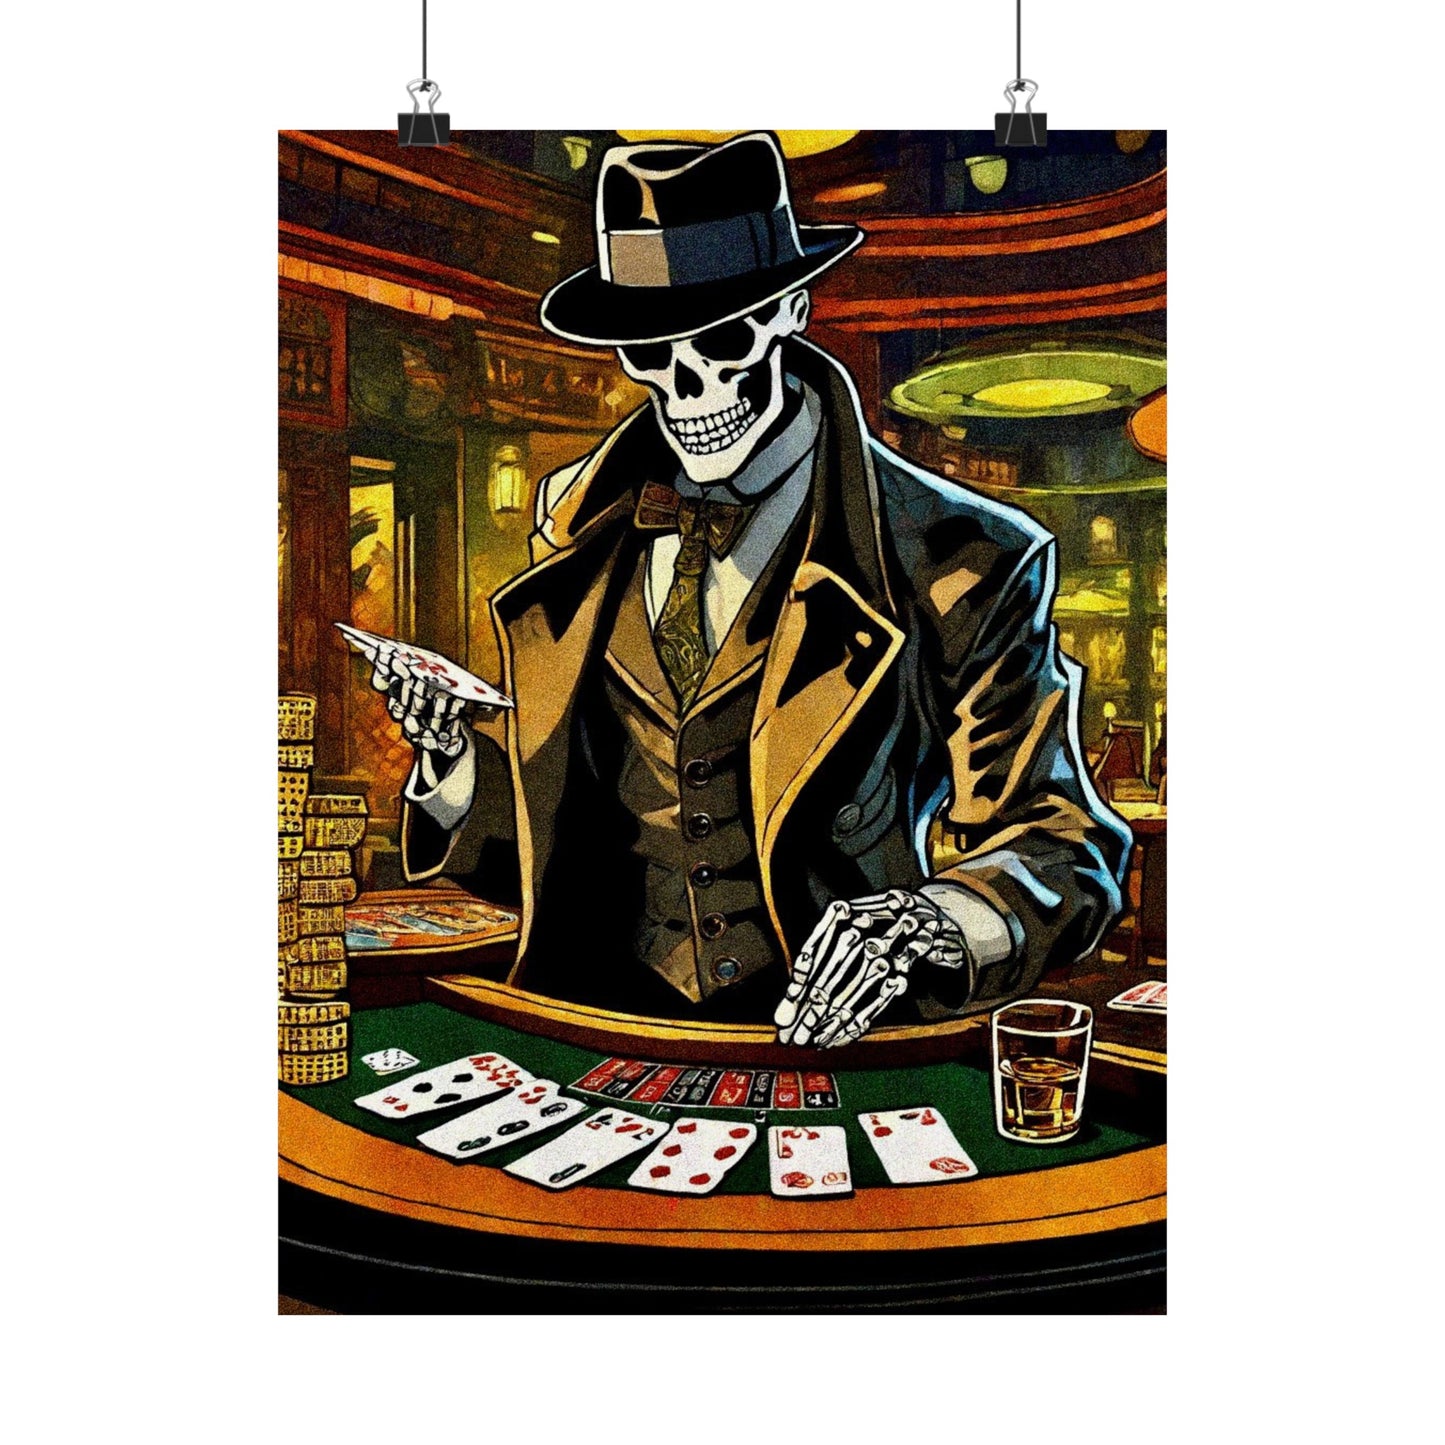 Gambling with Mr.Bones Posters